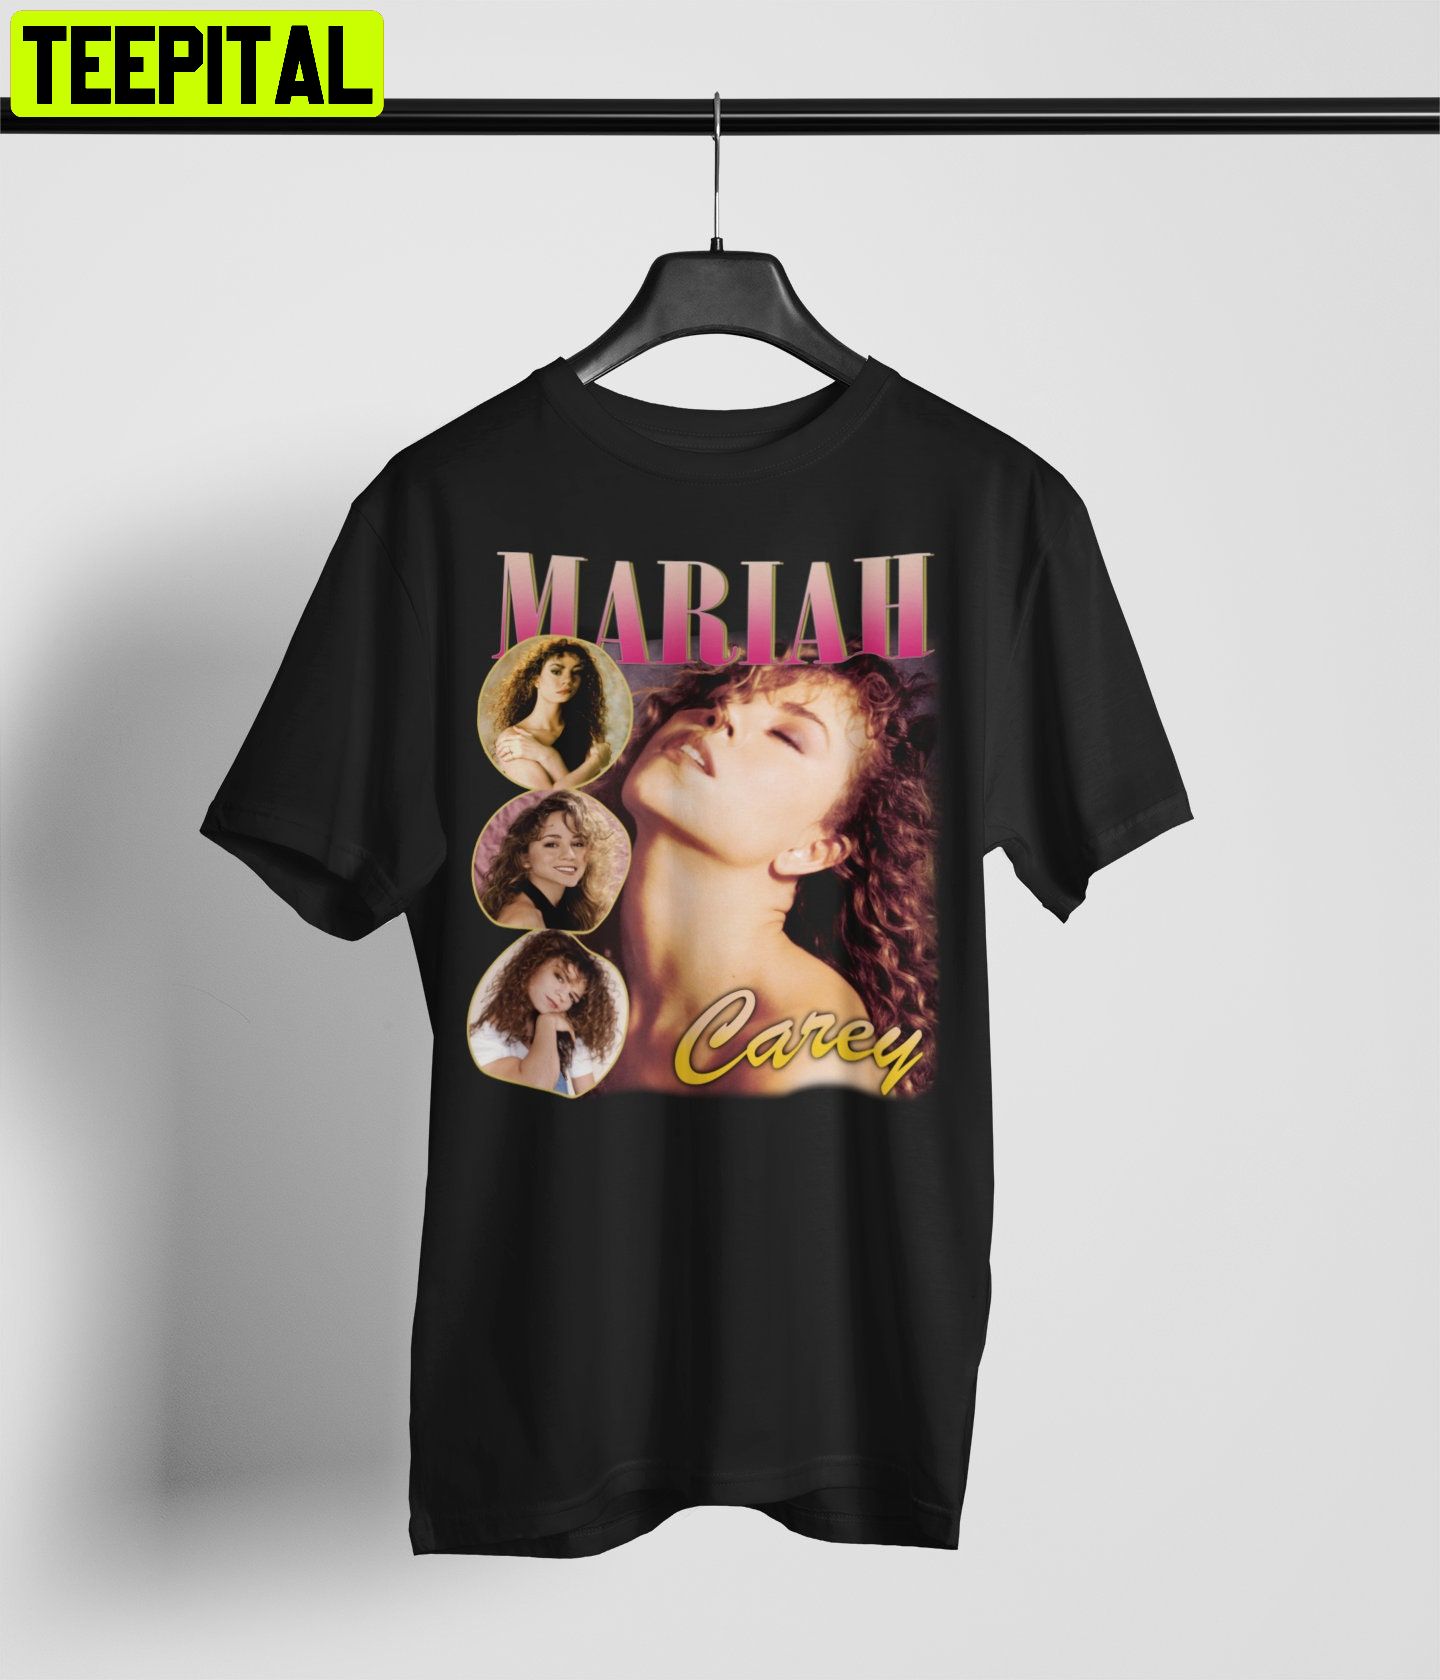 激レアデッドストック マライアキャリー Mariah Carey 1998年製 - www ...